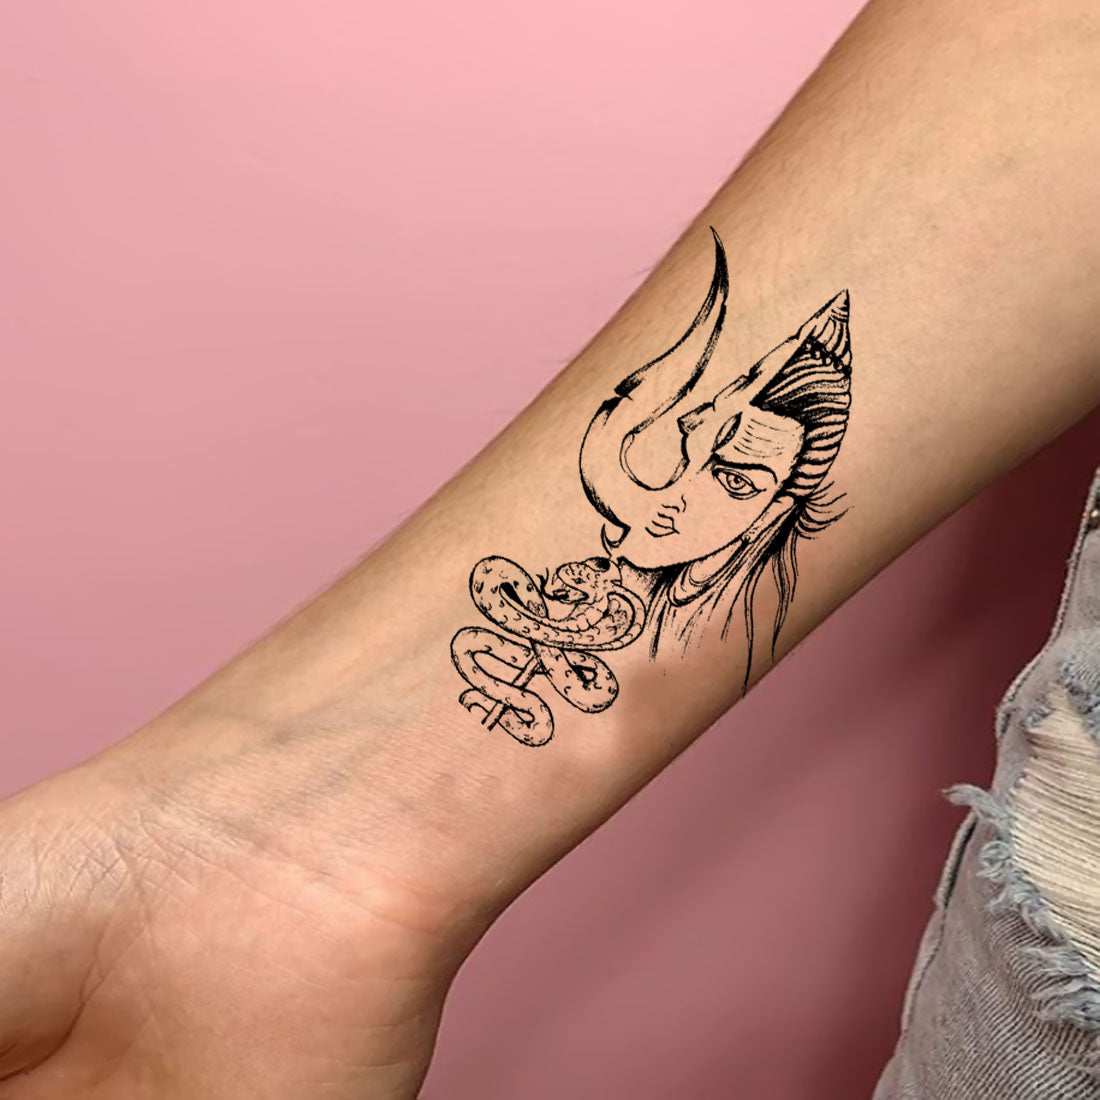 Shiva font tattoo design | Shiva tattoo design, Tattoo fonts, Tattoo designs